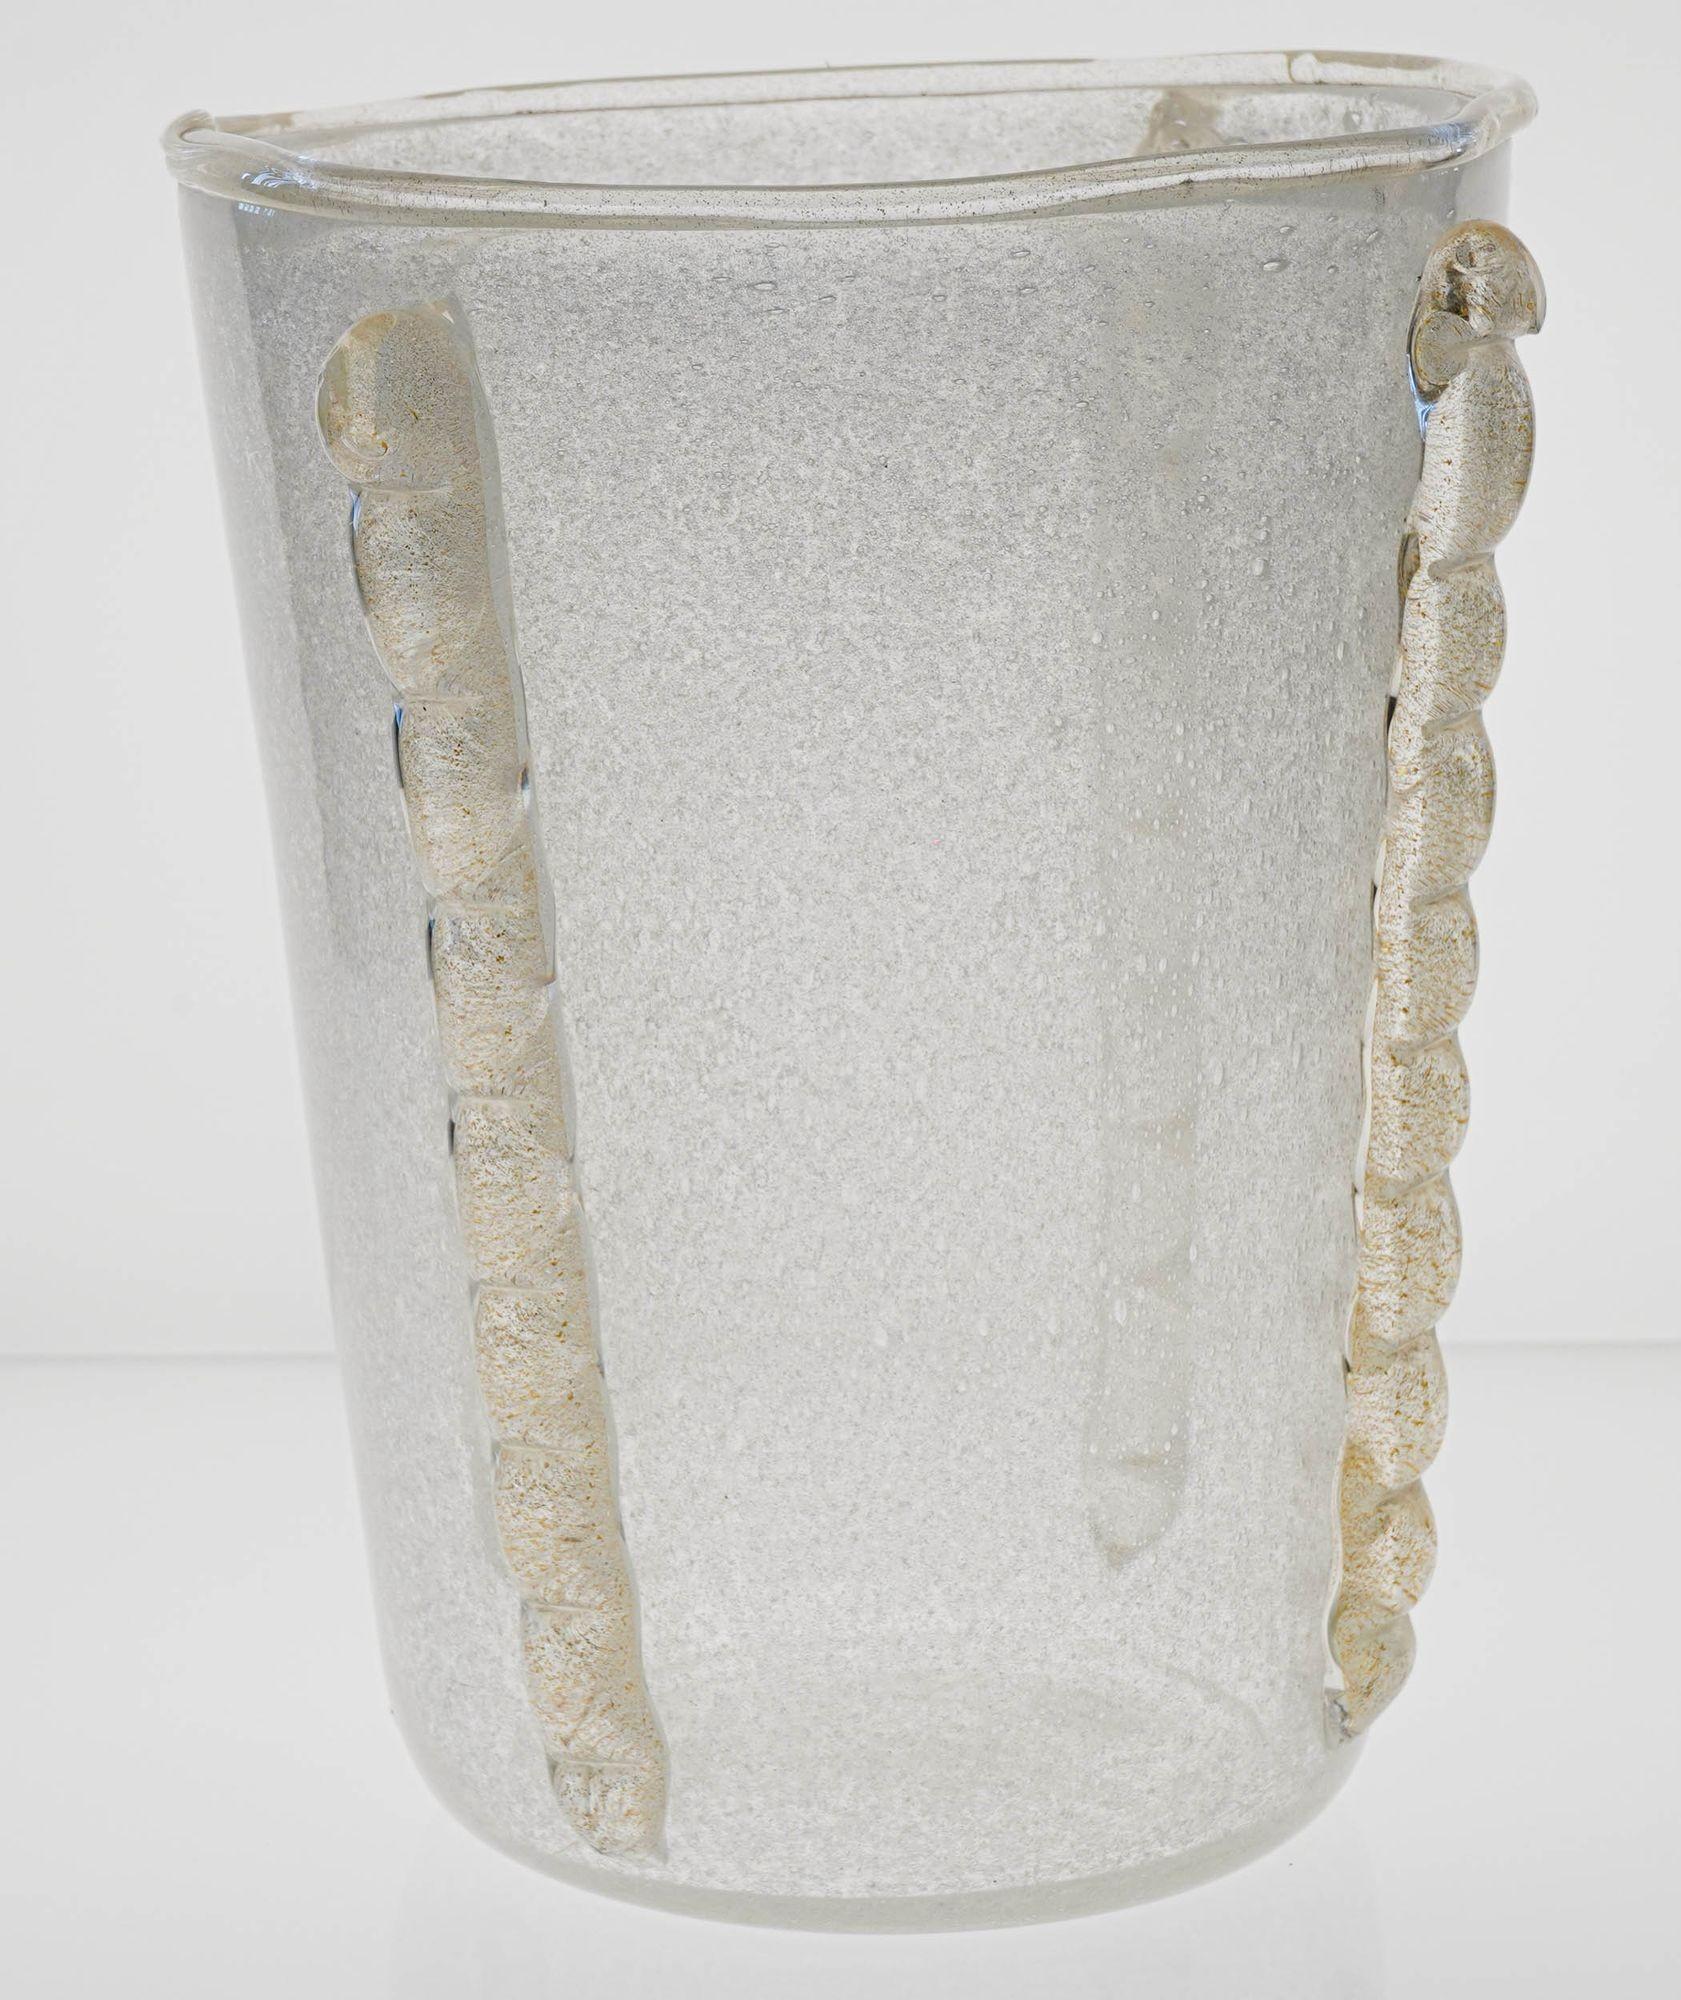 Très grand vase en verre Puligoso avec quatre applications verticales Morise incrustées de feuilles d'or 24K.
La finition Puligoso est extrêmement bien exécutée avec de petites bulles sur tout le corps du verre.
Je pense qu'il a été fabriqué pour